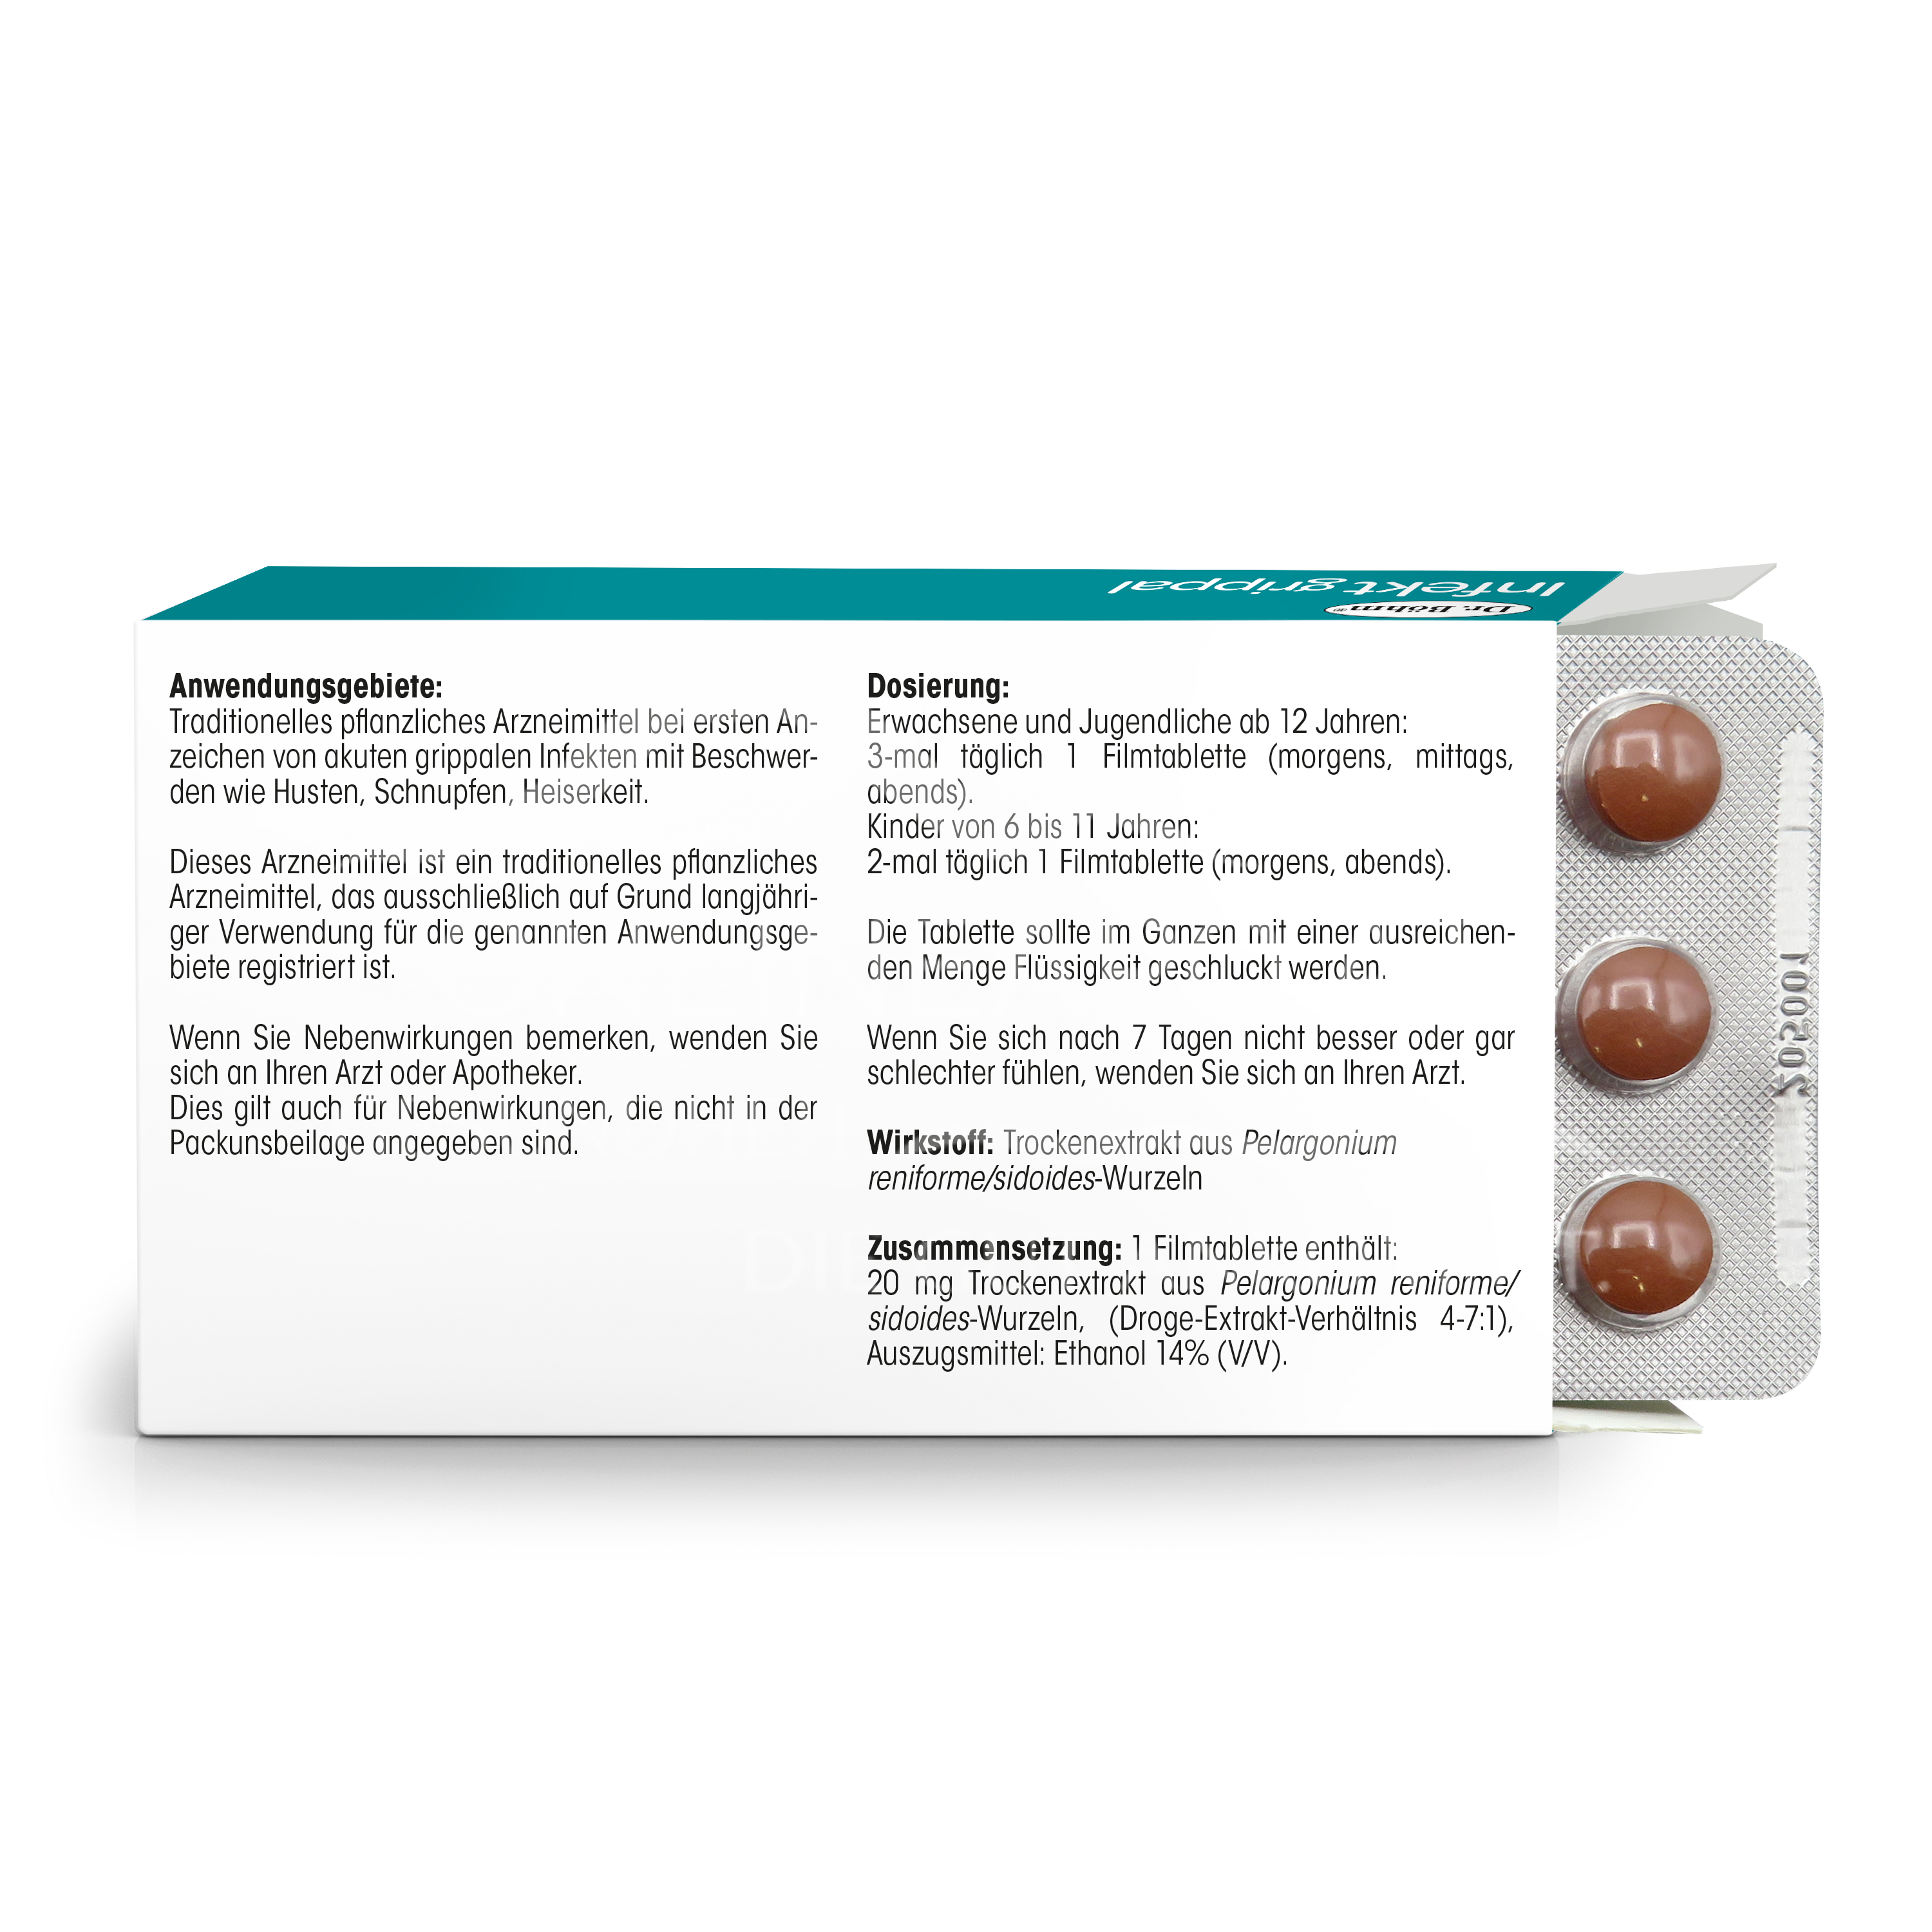 Dr. Böhm® Infekt grippal Pelargonium 20 mg Filmtabletten